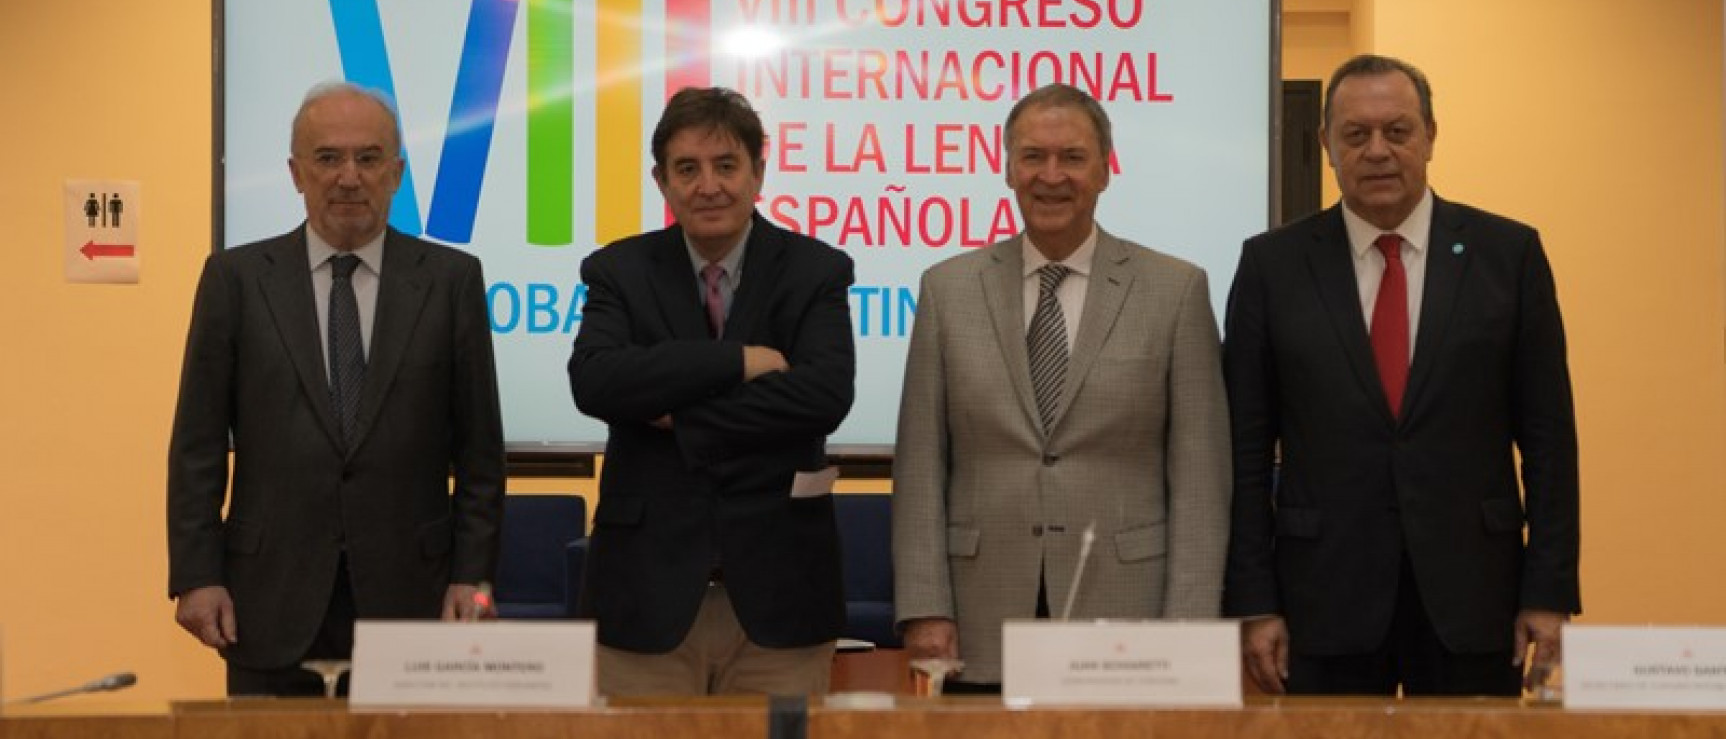 De izquierda a derecha: Santiago Muñoz Machado, Luis García Montero, Juan Schiaretti y Gustavo Santos.